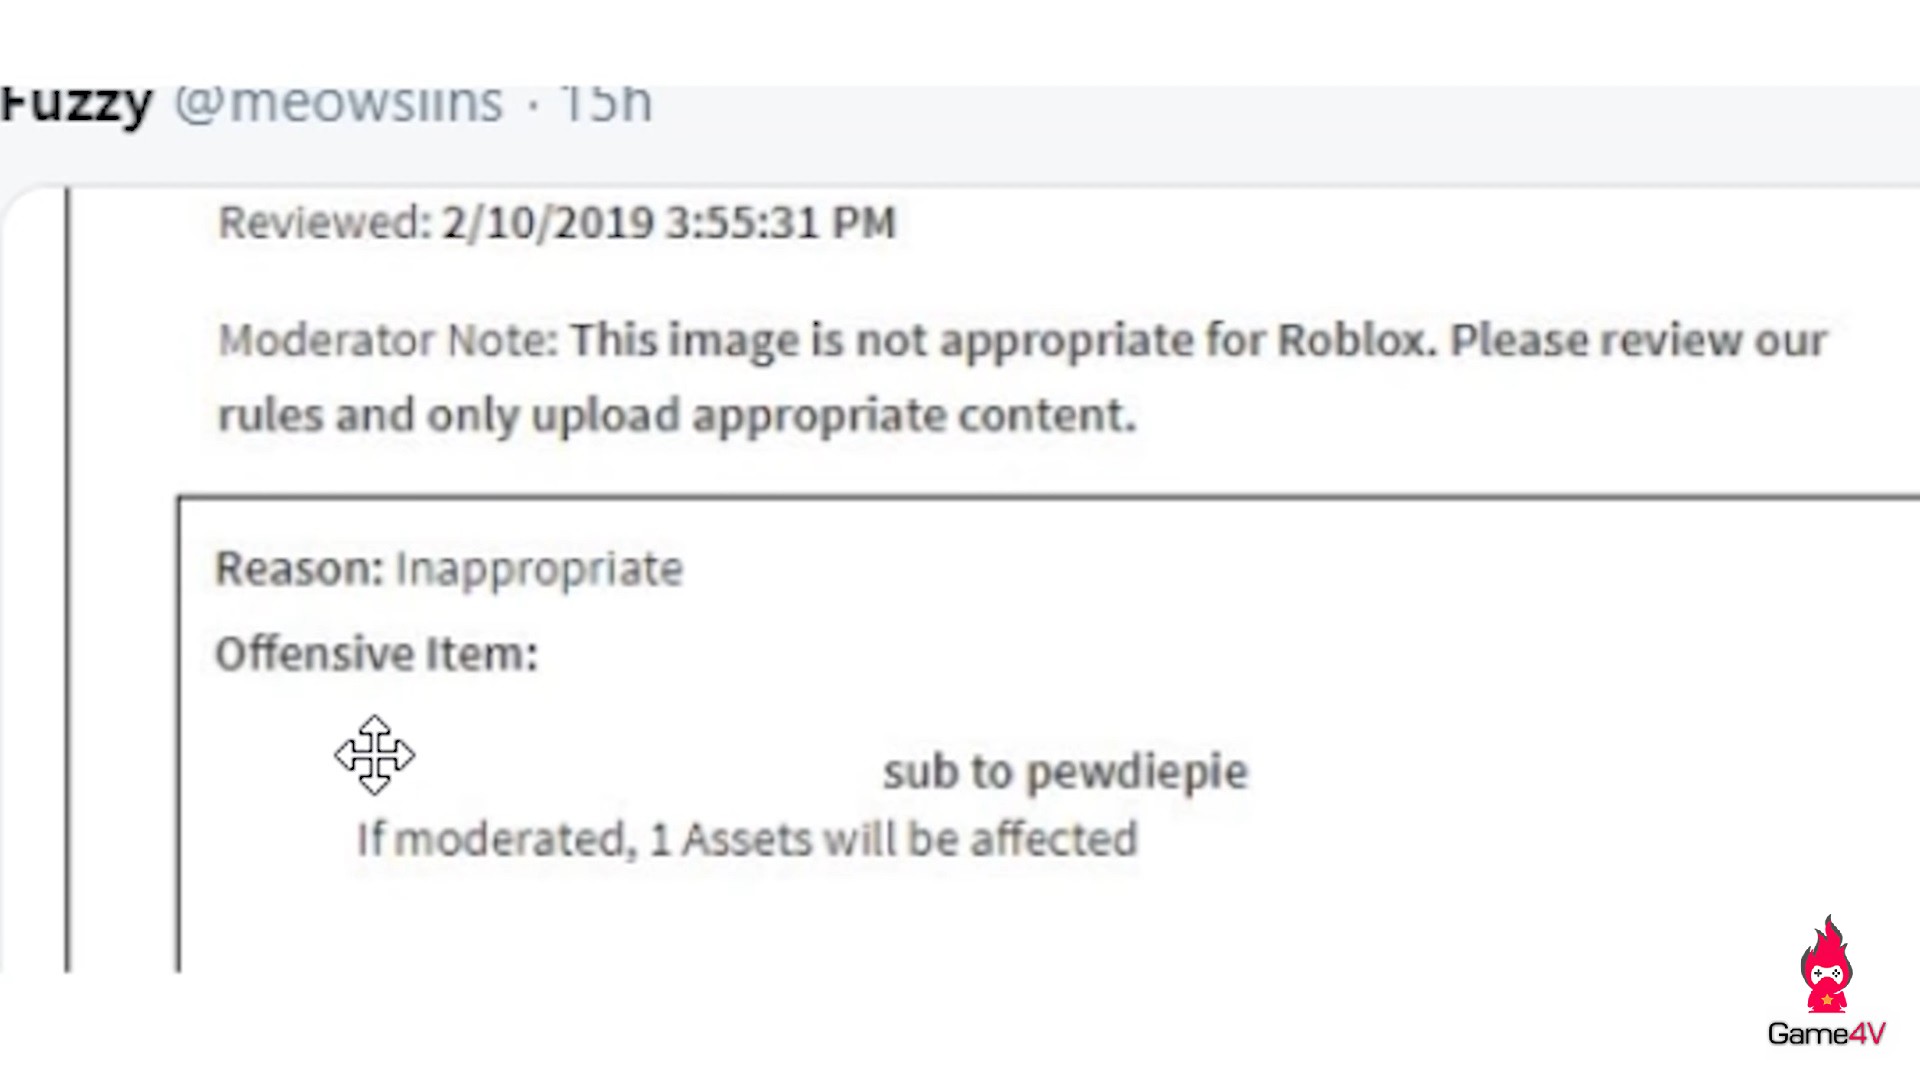 PewDiePie bị cấm chơi Roblox? Hãy xem hình ảnh liên quan để biết thêm thông tin về sự việc và nhận những ý kiến của cộng đồng game thủ về việc này.